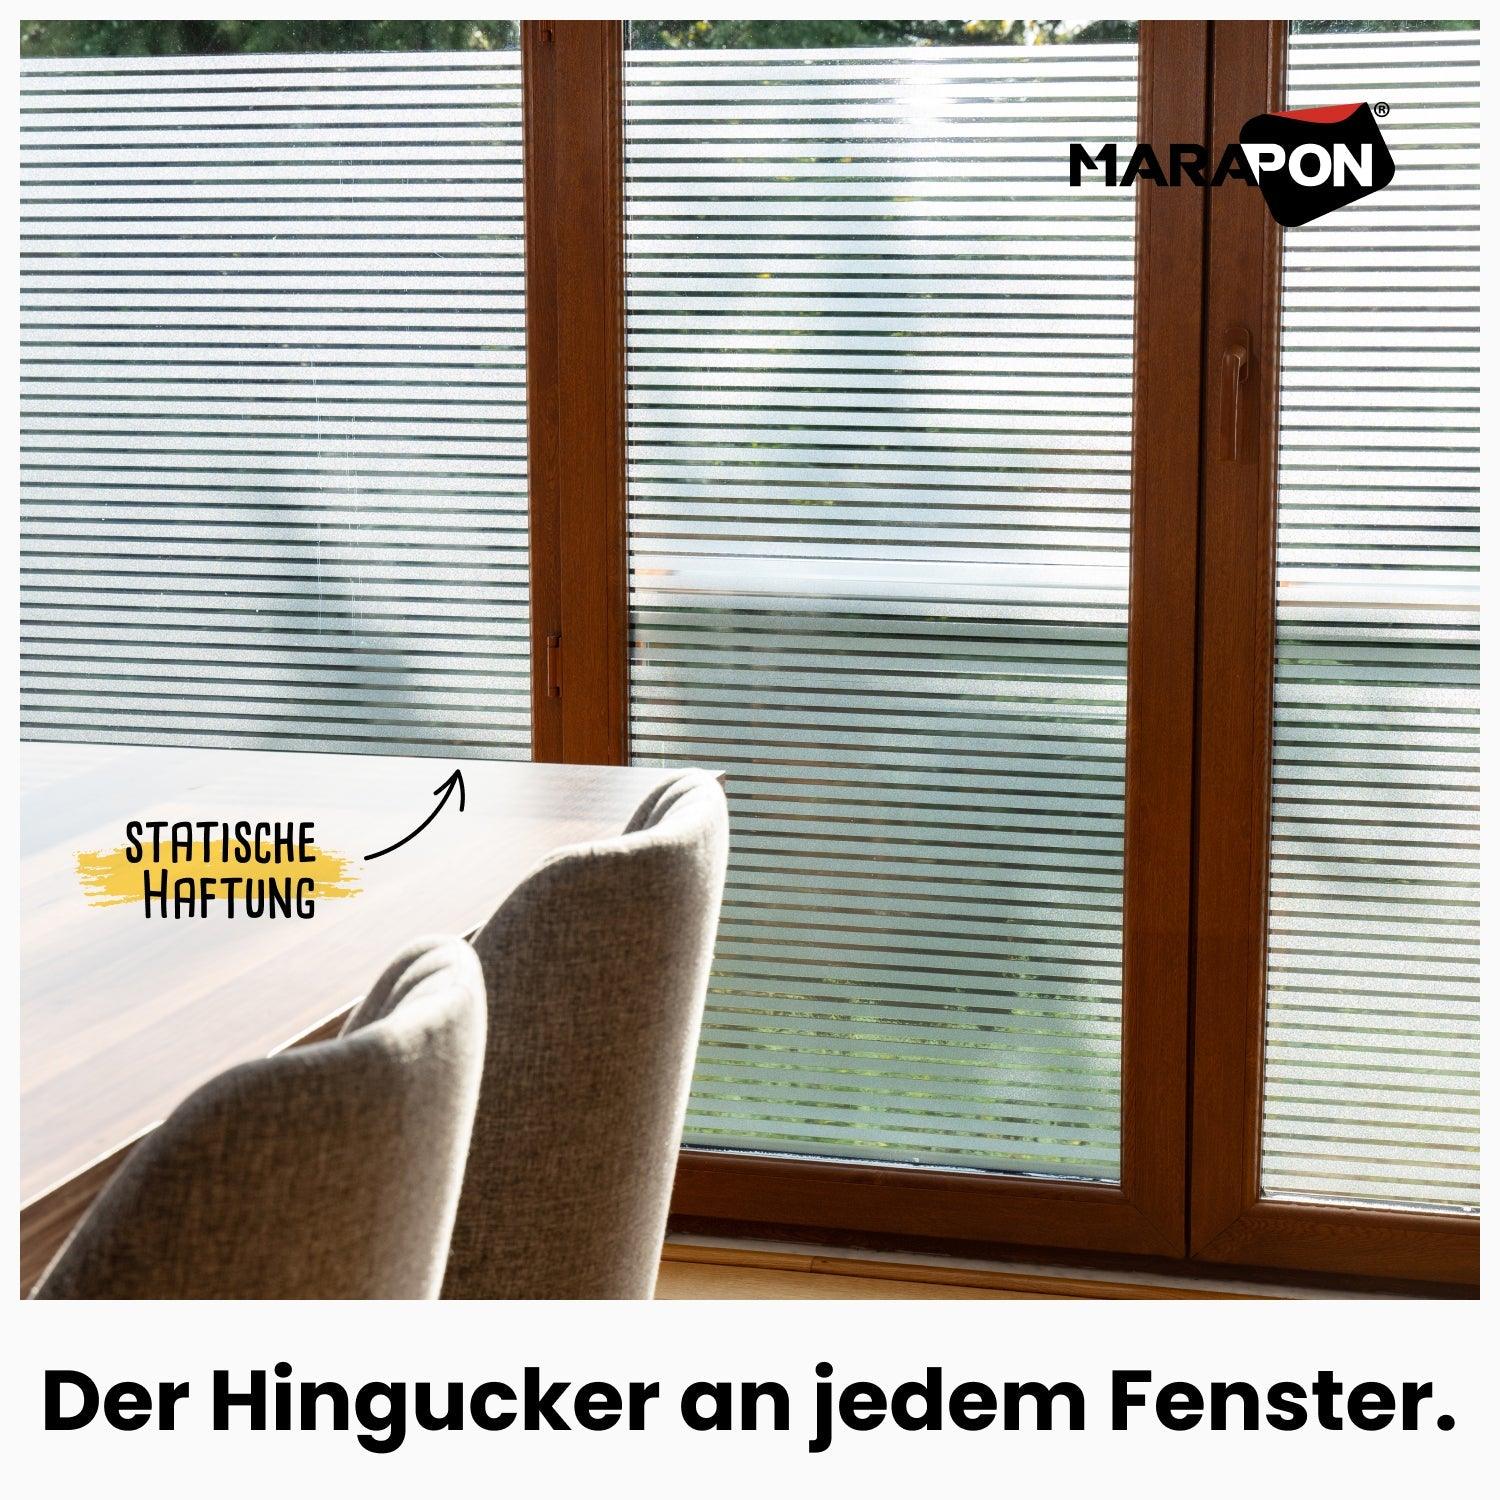 NEU* 1 Stk. MARAPON Fensterfolie selbsthaftend Blickdicht 75 x 400 cm -  VERFÜGBAR, € 33,- (1220 Wien) - willhaben